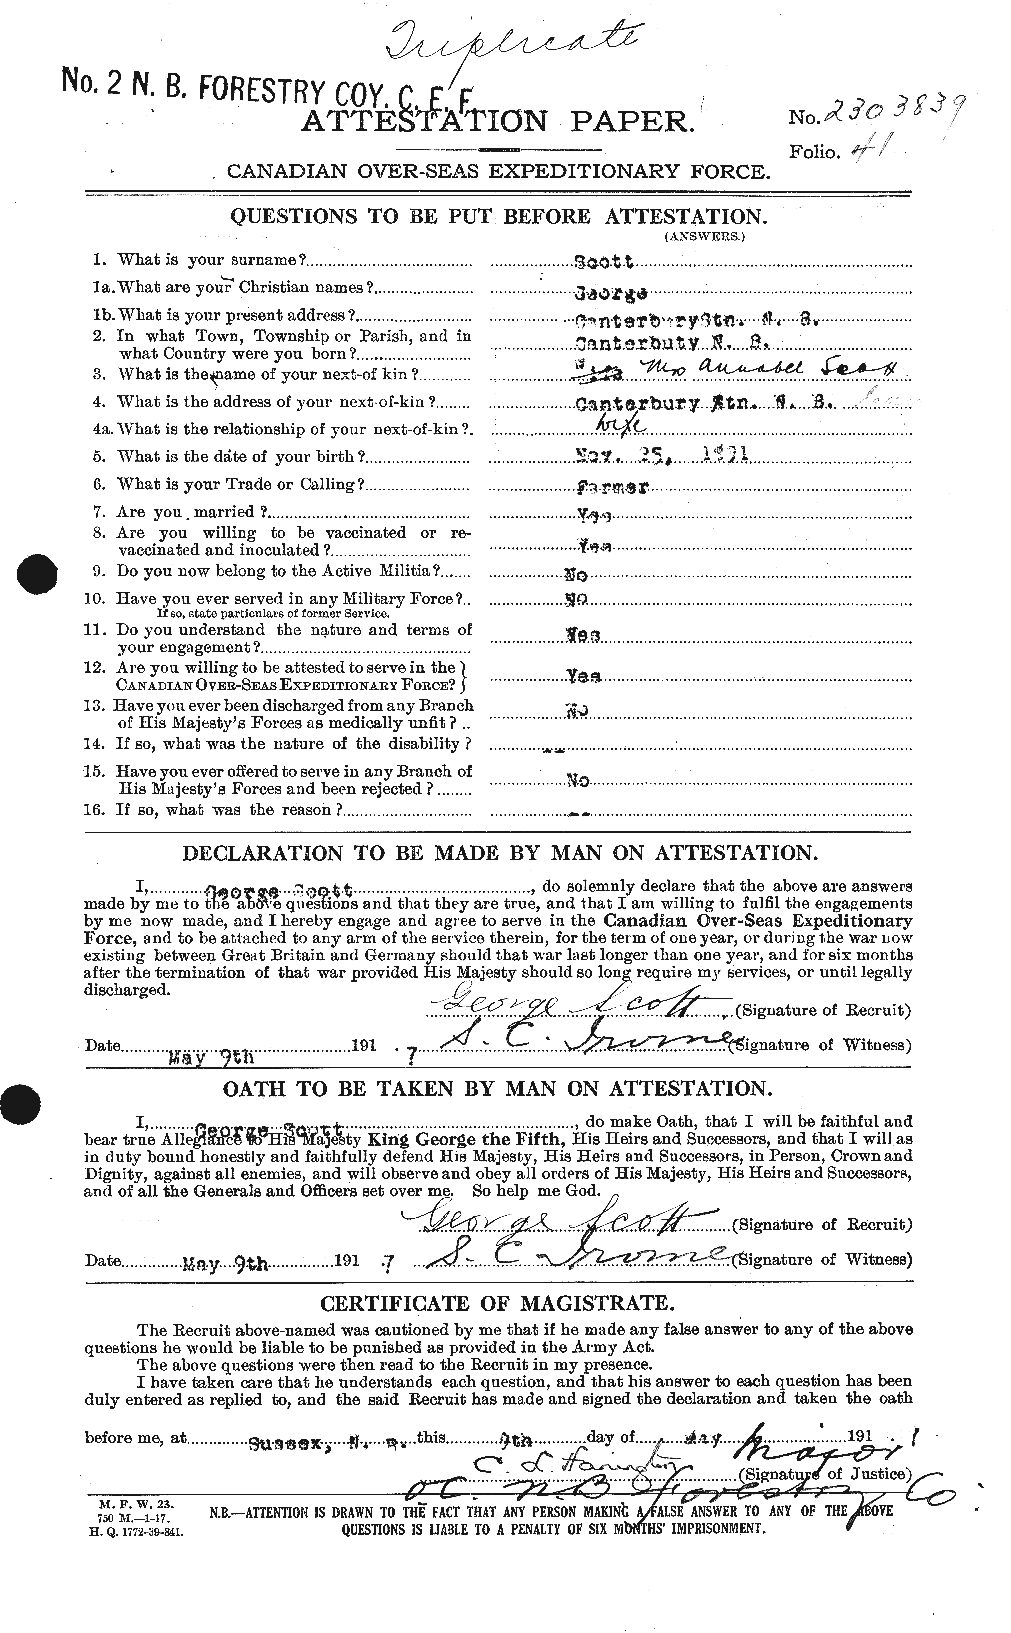 Dossiers du Personnel de la Première Guerre mondiale - CEC 084355a